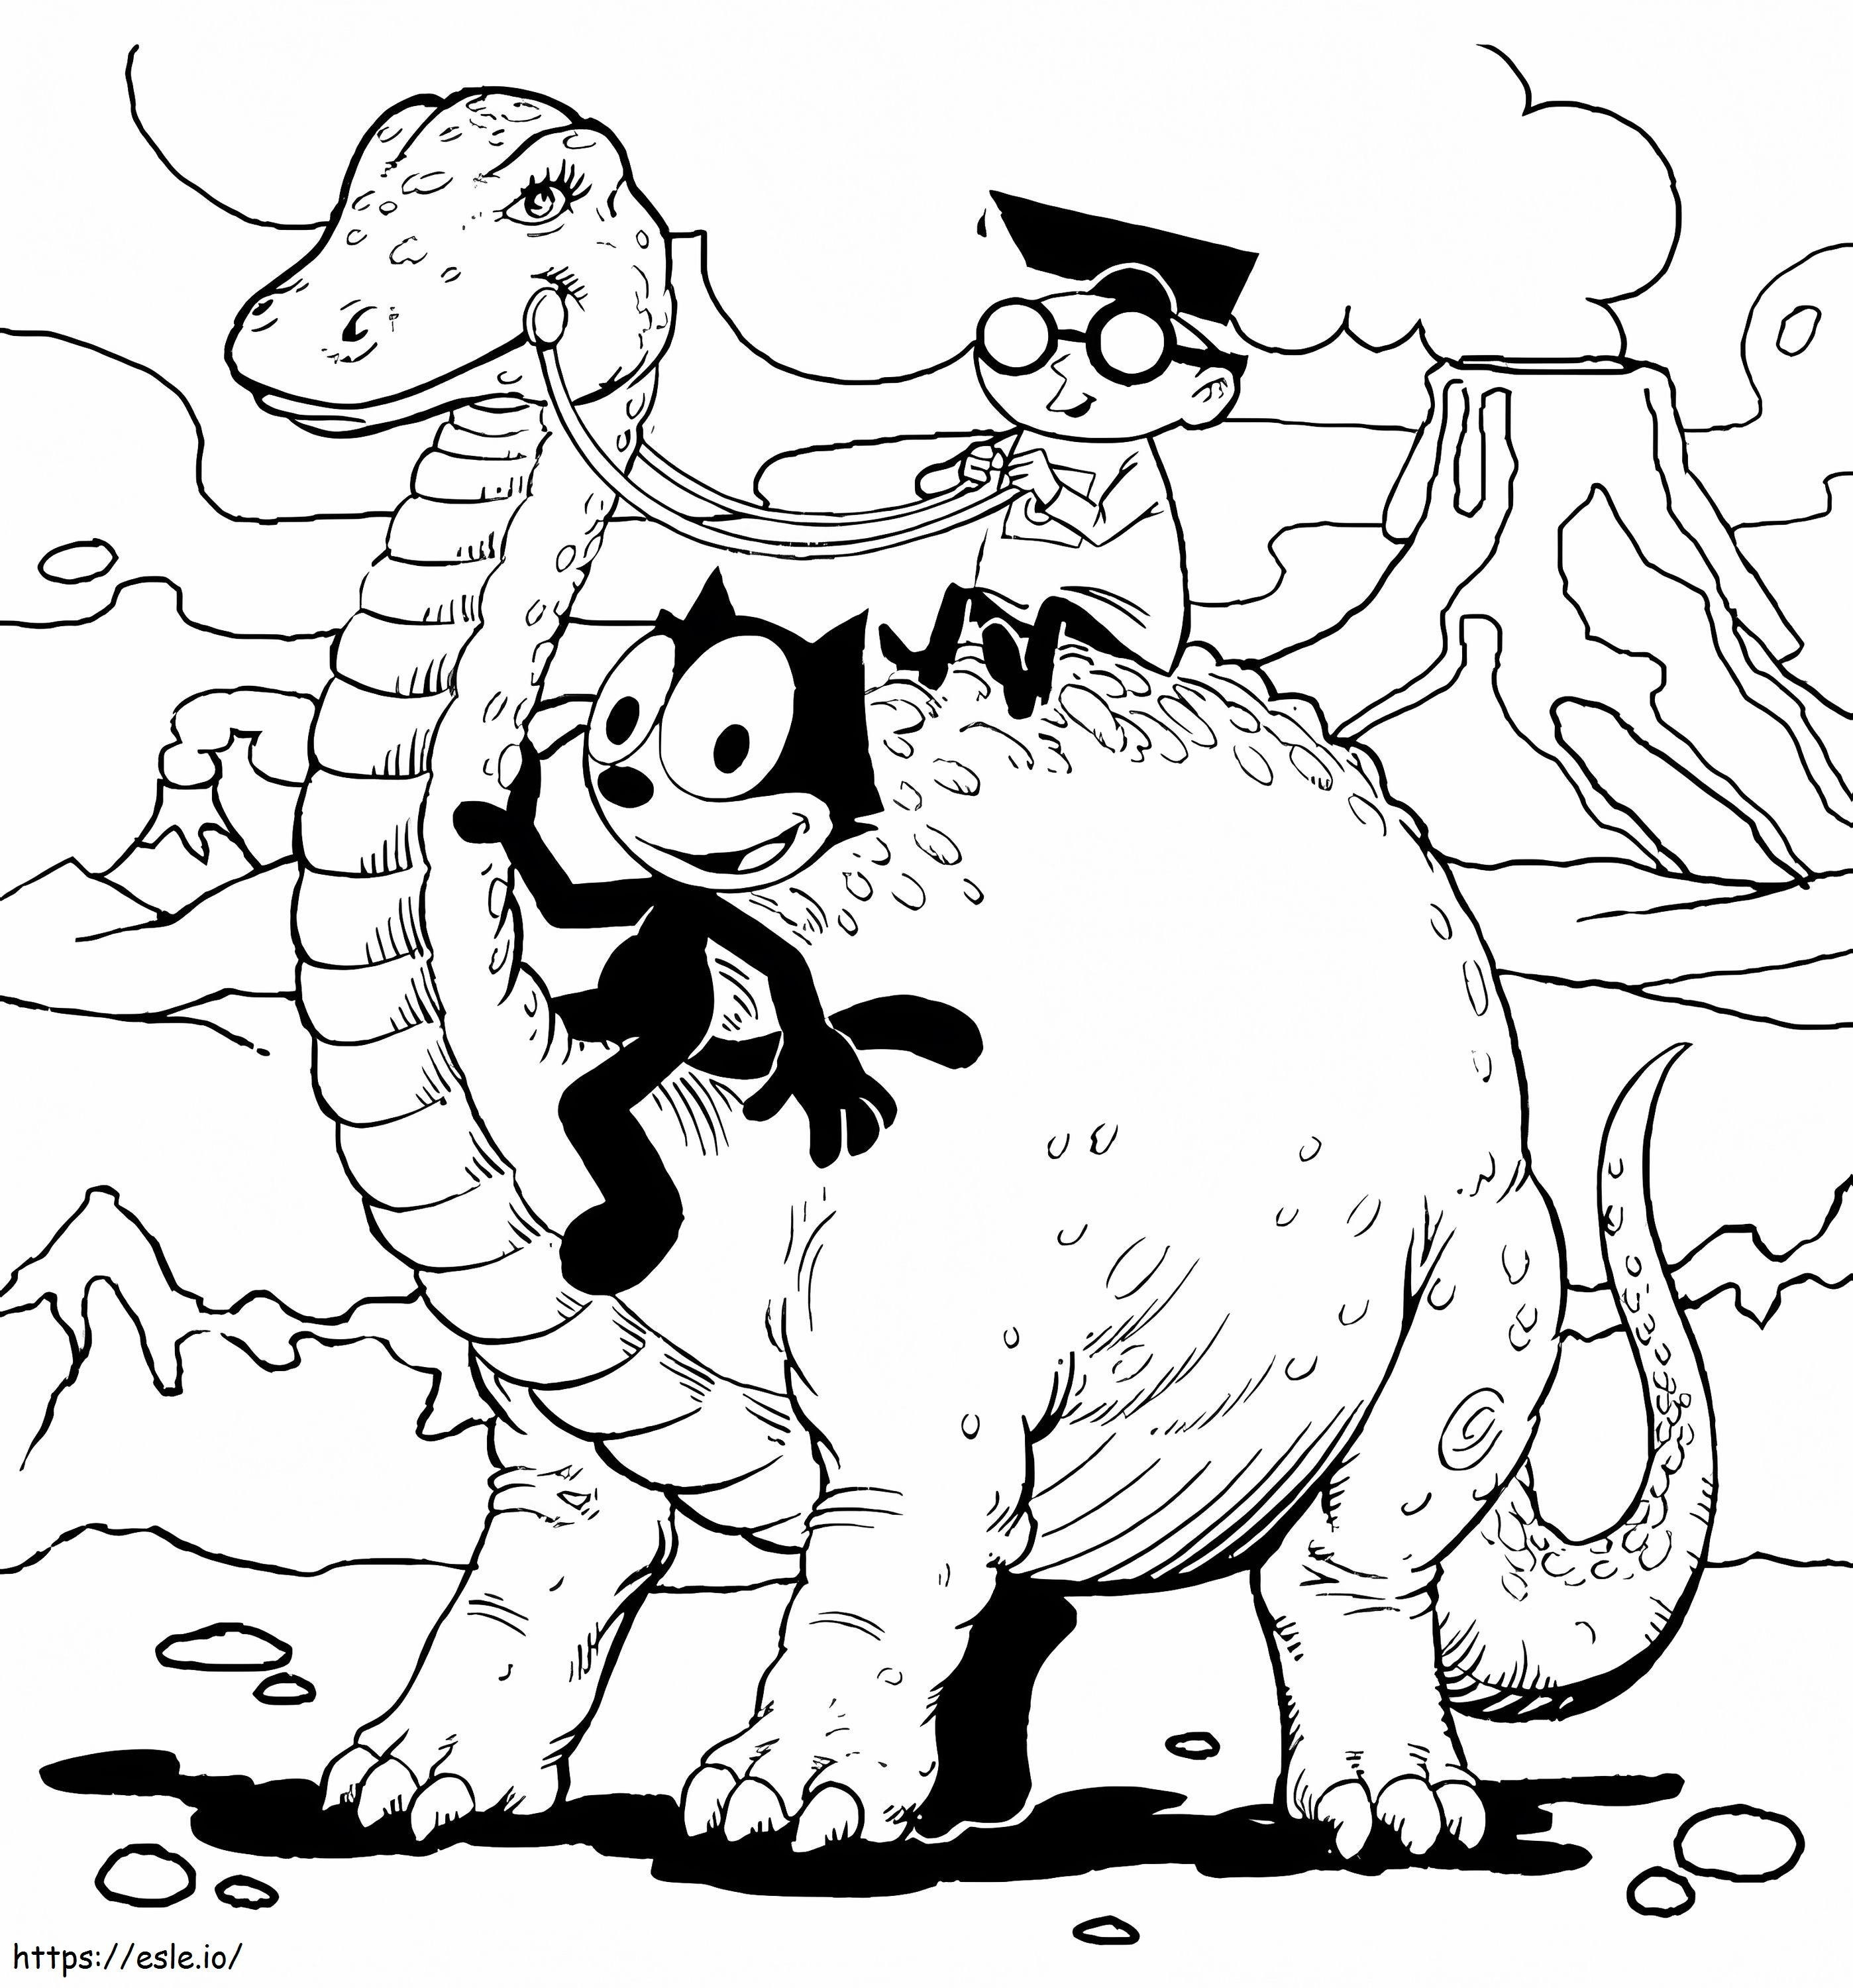 Felix il gatto e il dinosauro da colorare